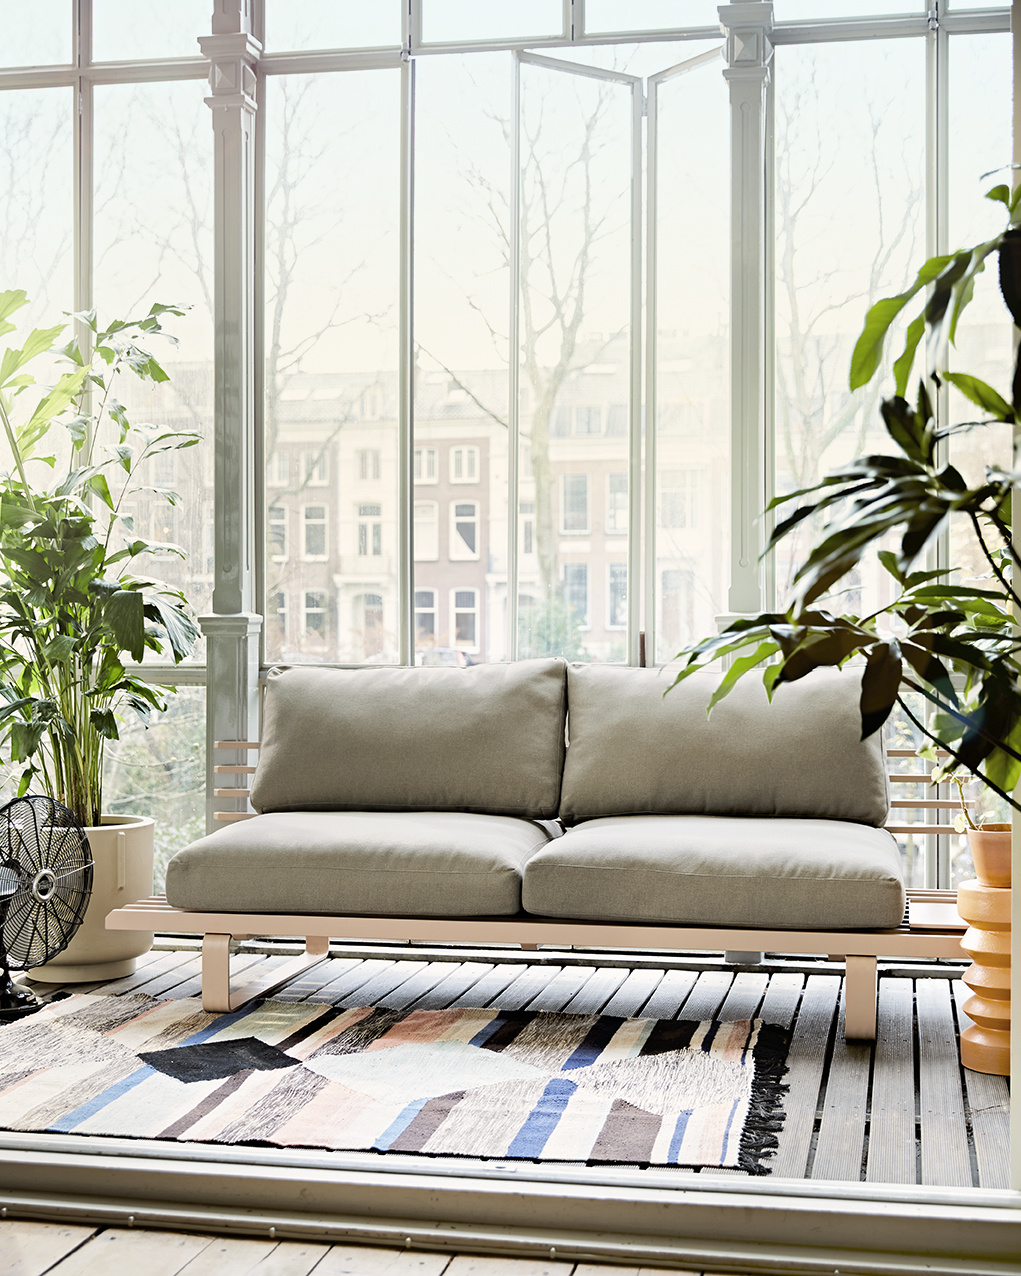 HK Living Outdoor sofa Chai - Aluminum - 220x84xh63cm